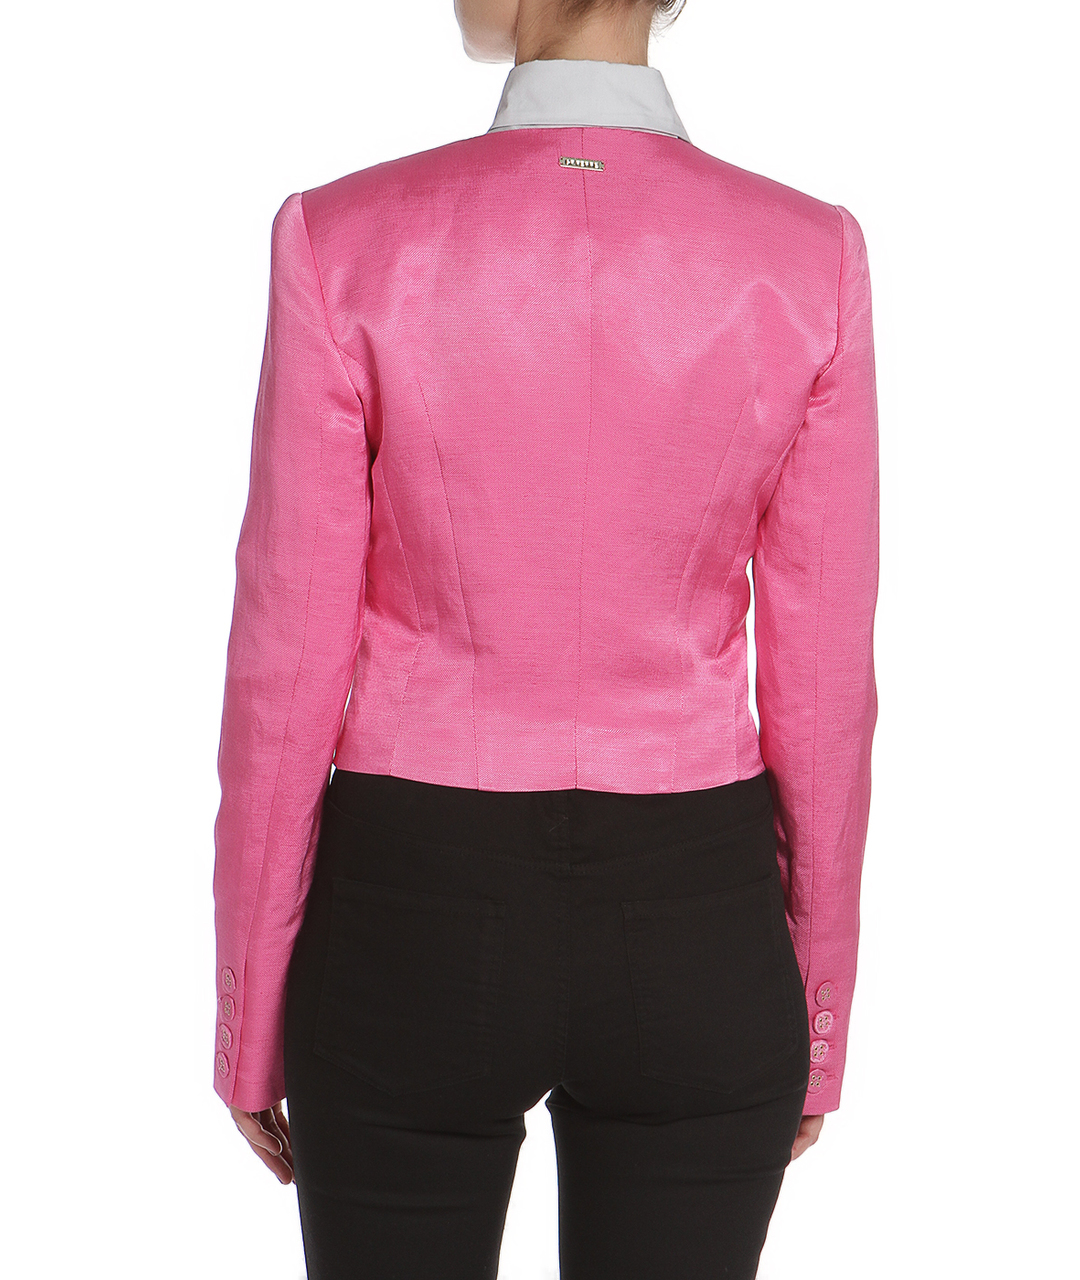 GIANFRANCO FERRE Розовый льняной жакет/пиджак, фото 5